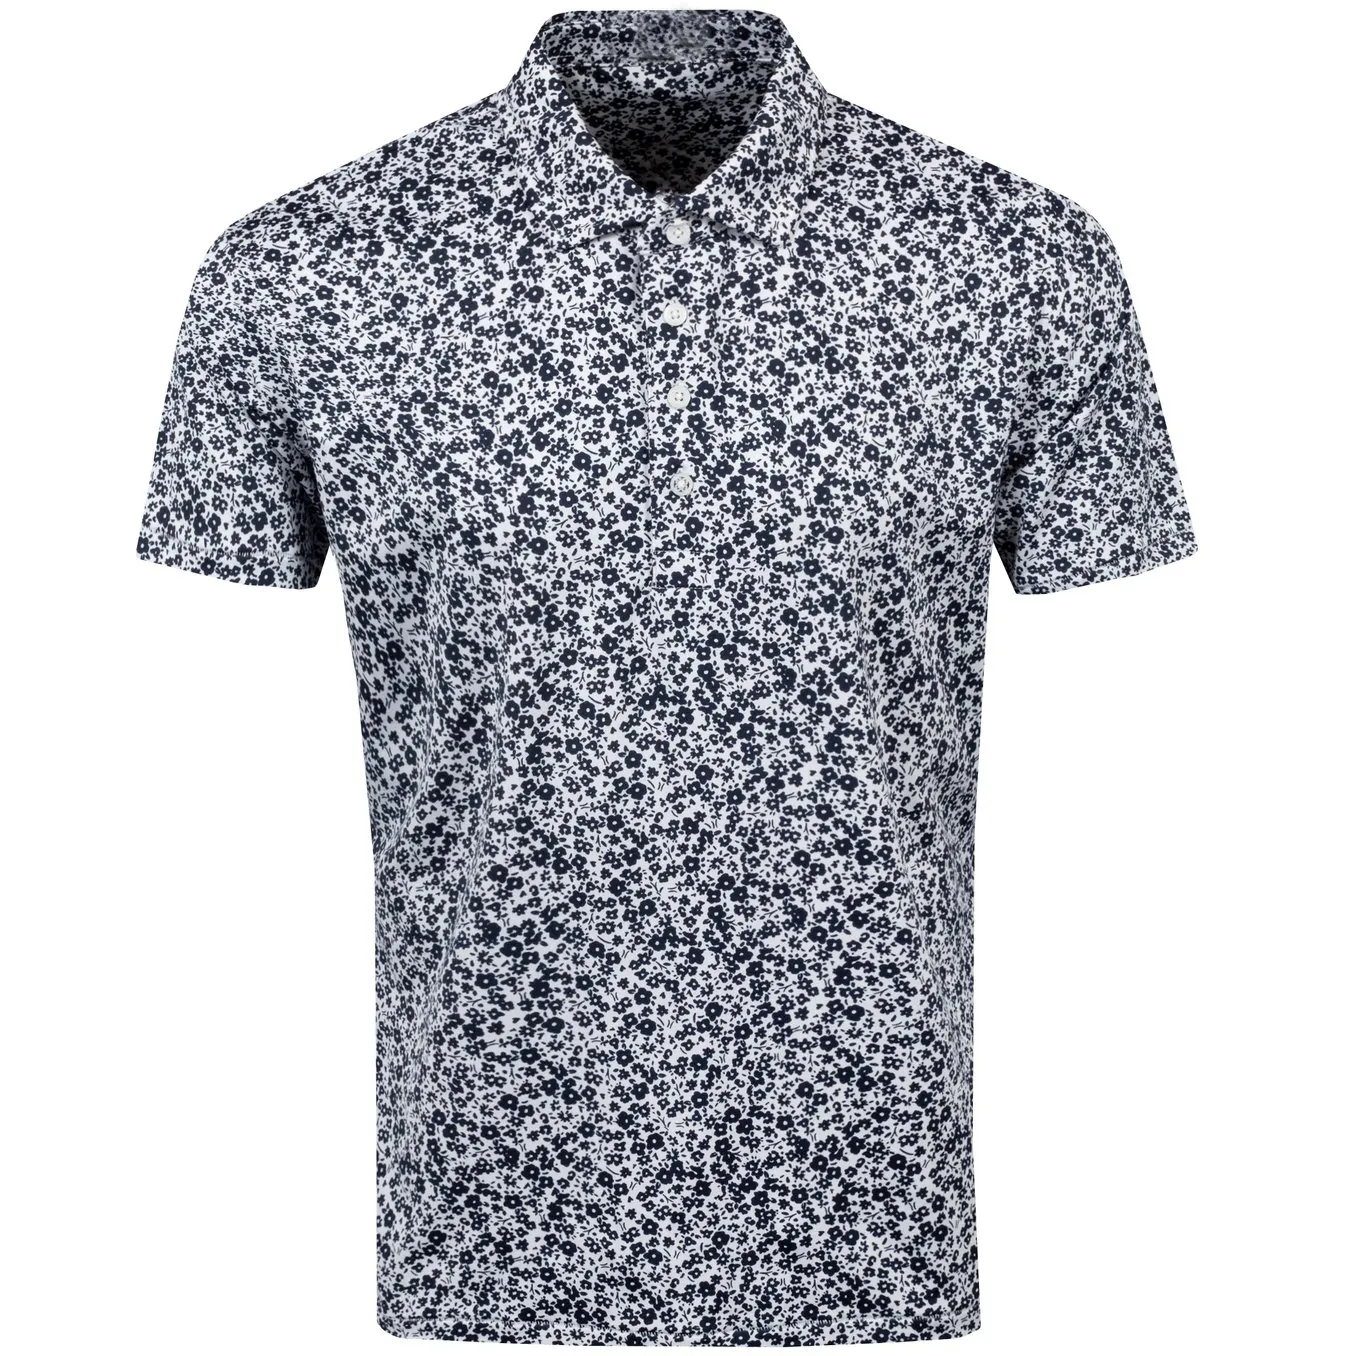 Сплошным принтом Футболки Поло для мужчин высокого качества в новом стиле 100% хлопчатобумажная ткань оптовая цена изготовленным на заказ логосом Гольф рубашка